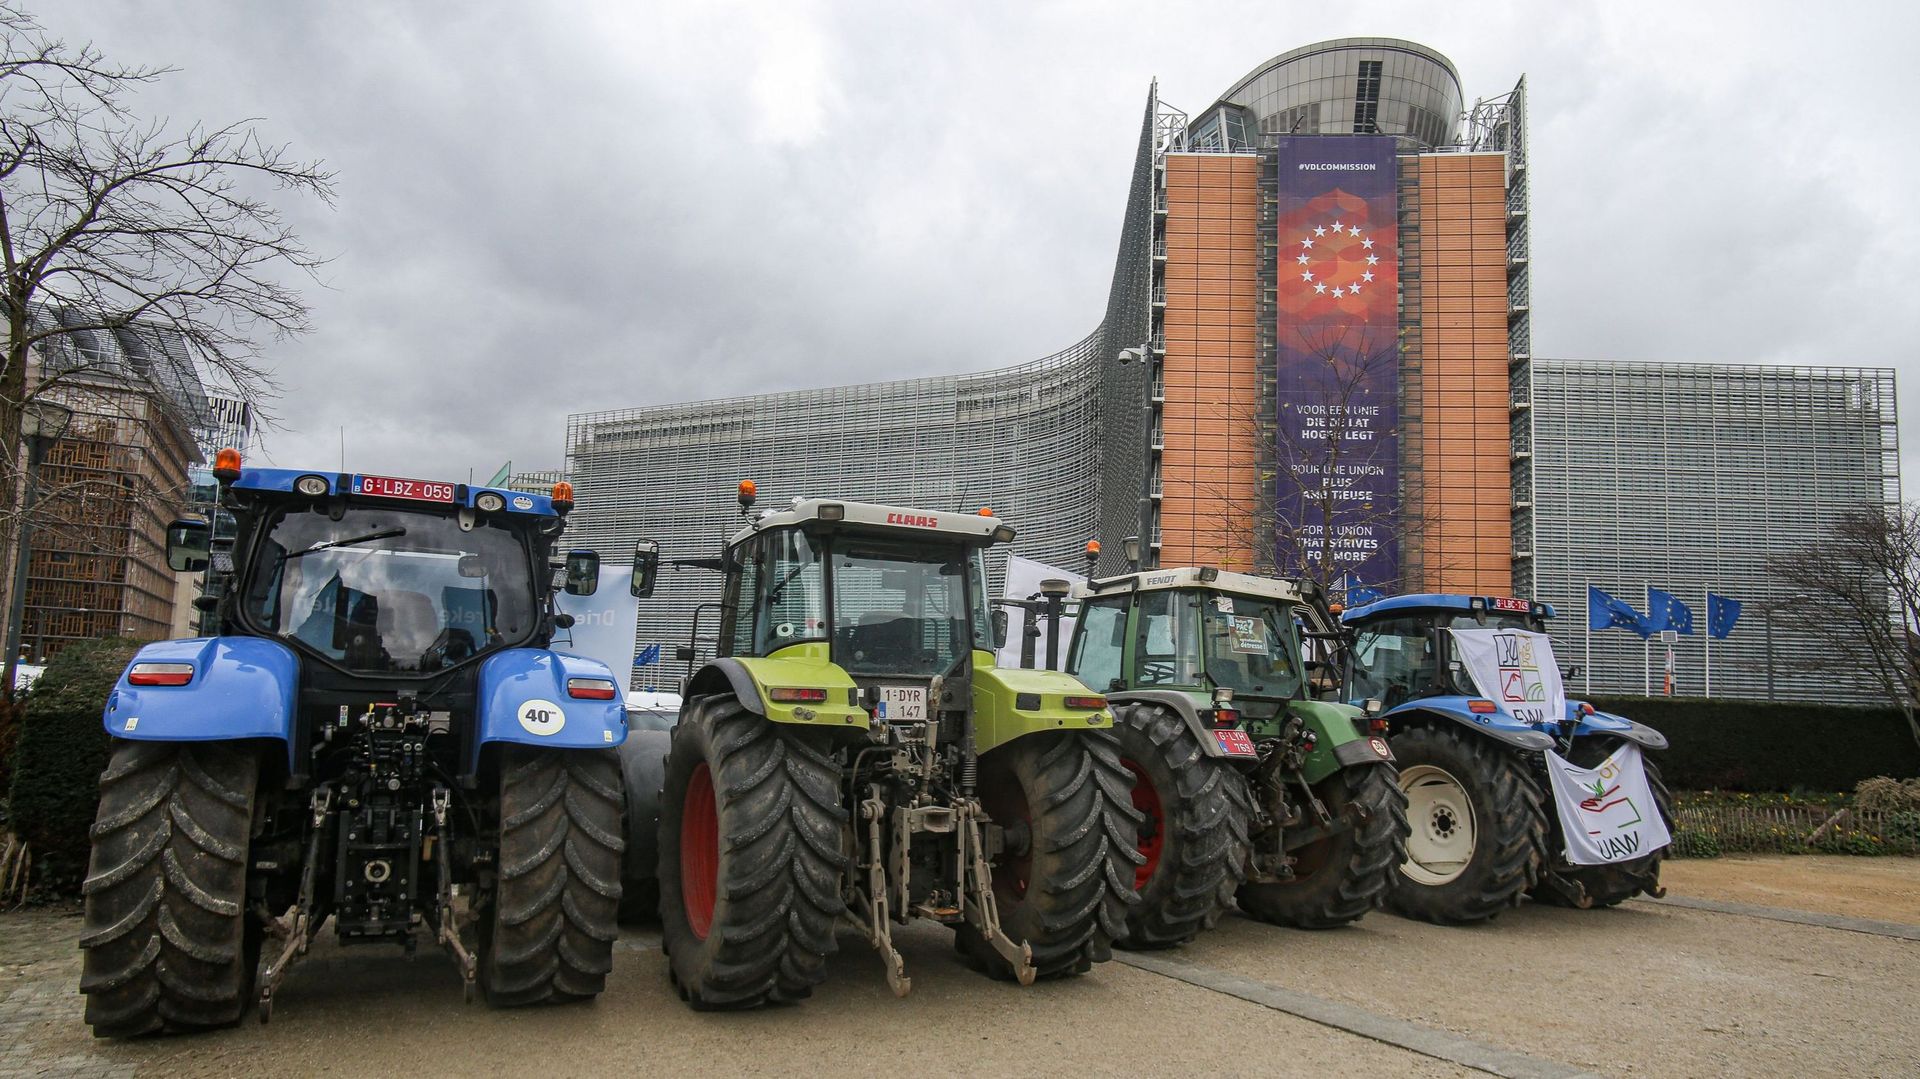 Des agriculteurs et producteurs de lait européens s'étaient rassemblés devant le siège de l'UE autour de Schumanplein avant et pendant un sommet spécial du Conseil européen, réunion des dirigeants de l'UE le 20 février 2020 à Bruxelles, en Belgique.